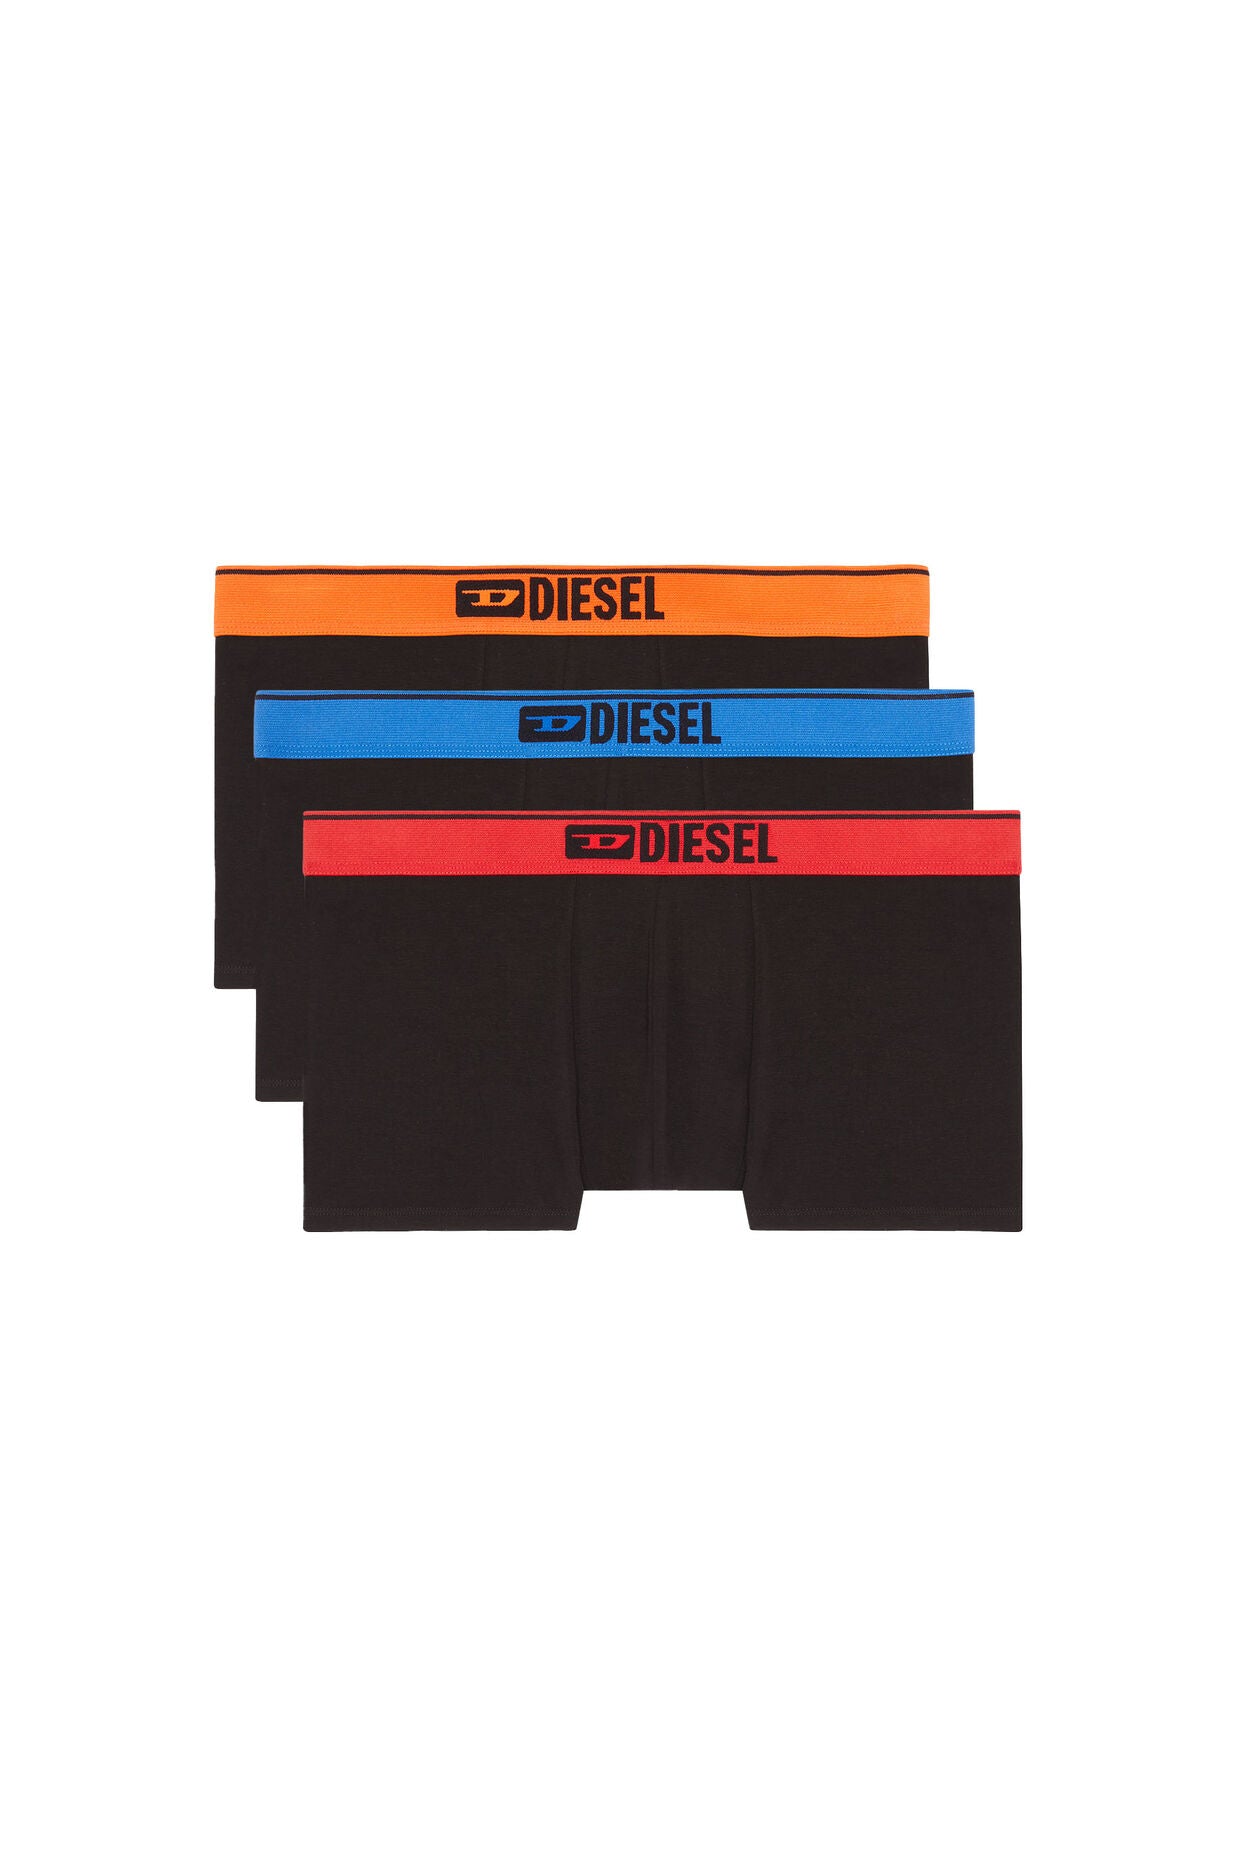 Diesel - Damien Boxers 3 Pack - Orange/Blue/Red